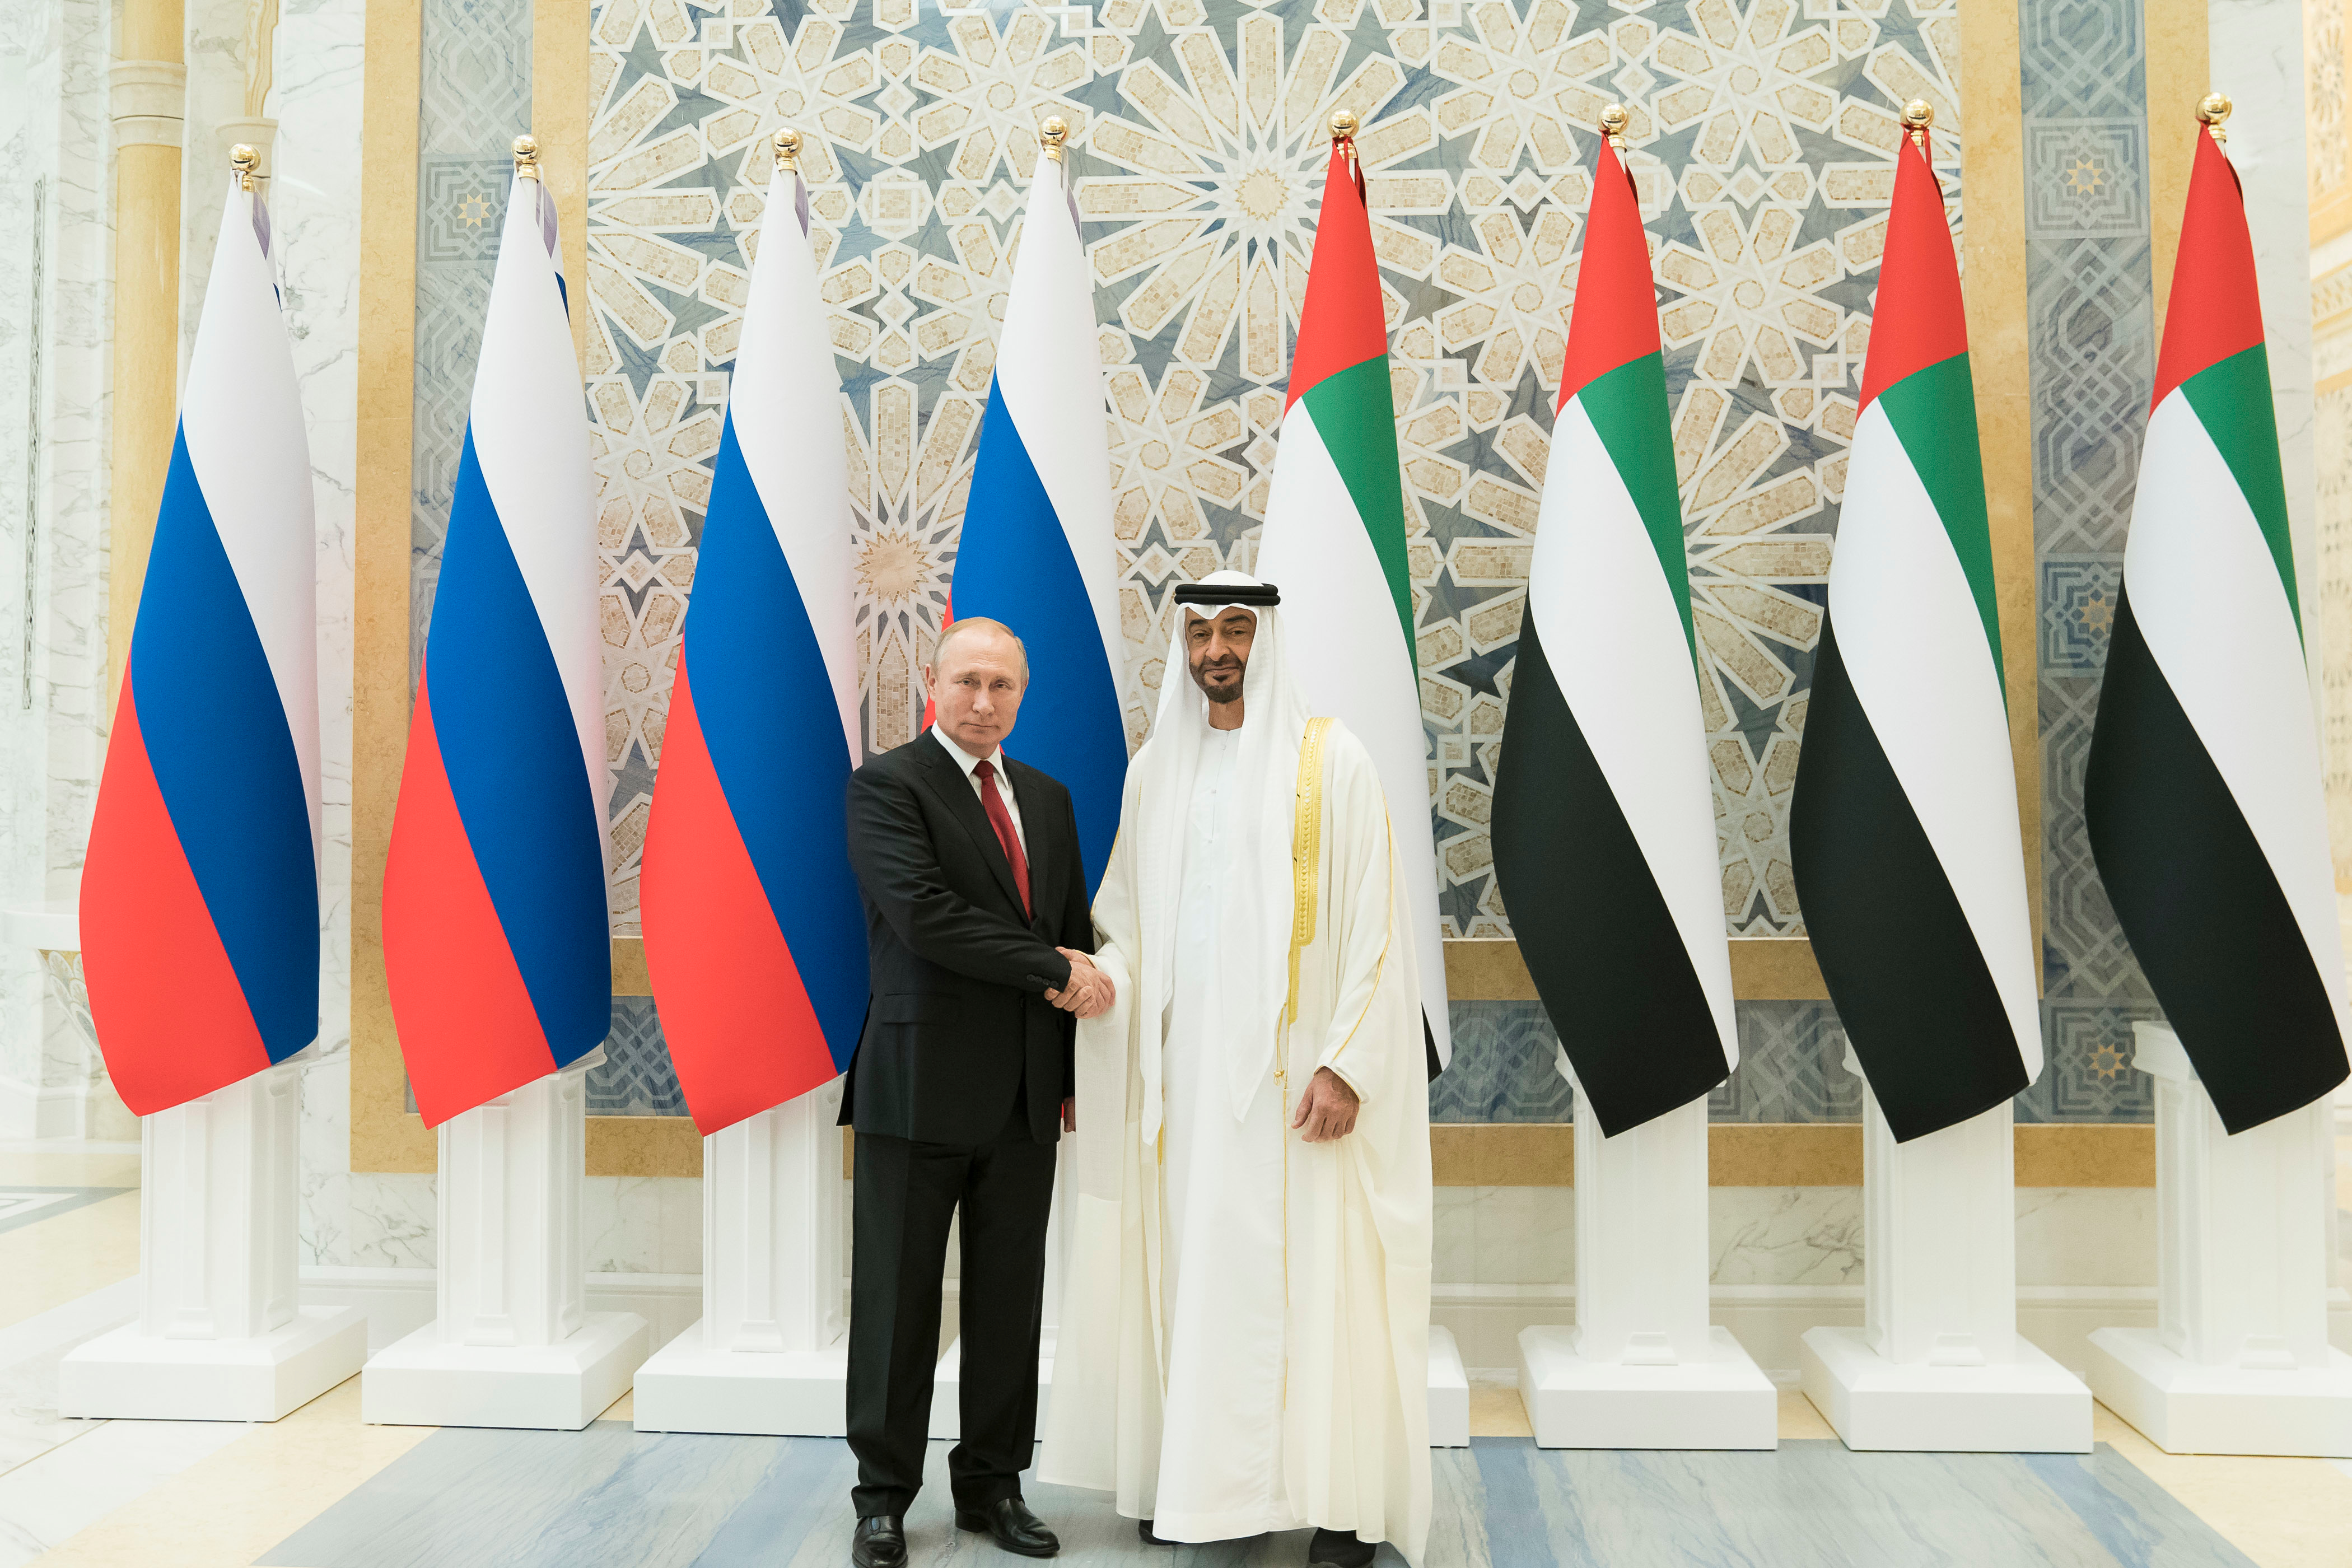 محمد بن زايد يستقبل الرئيس الروسي فلاديمير بوتين في قصر الوطن حيث جرت له مراسم استقبال رسمية.